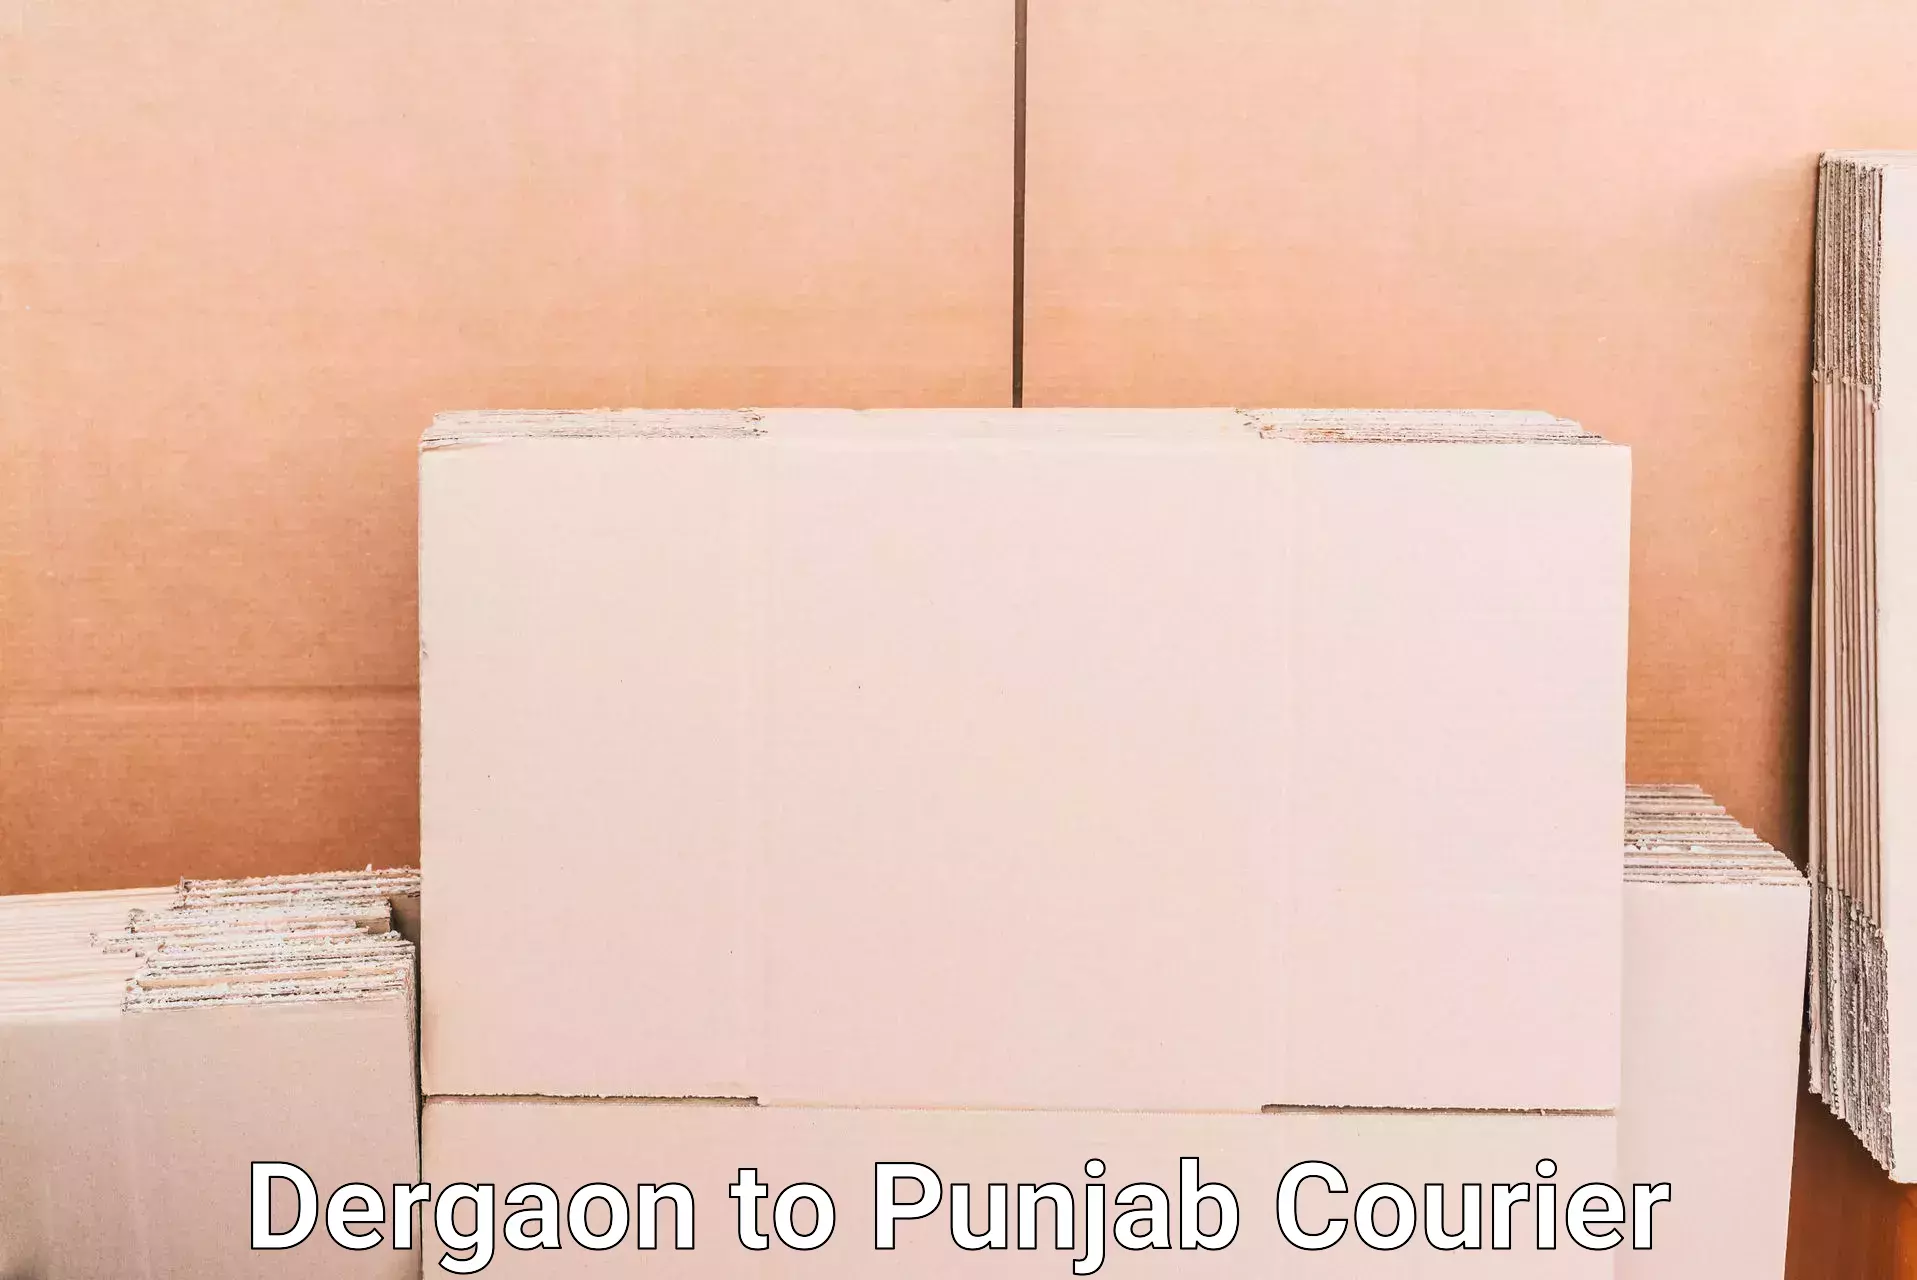 Baggage handling services Dergaon to Punjab